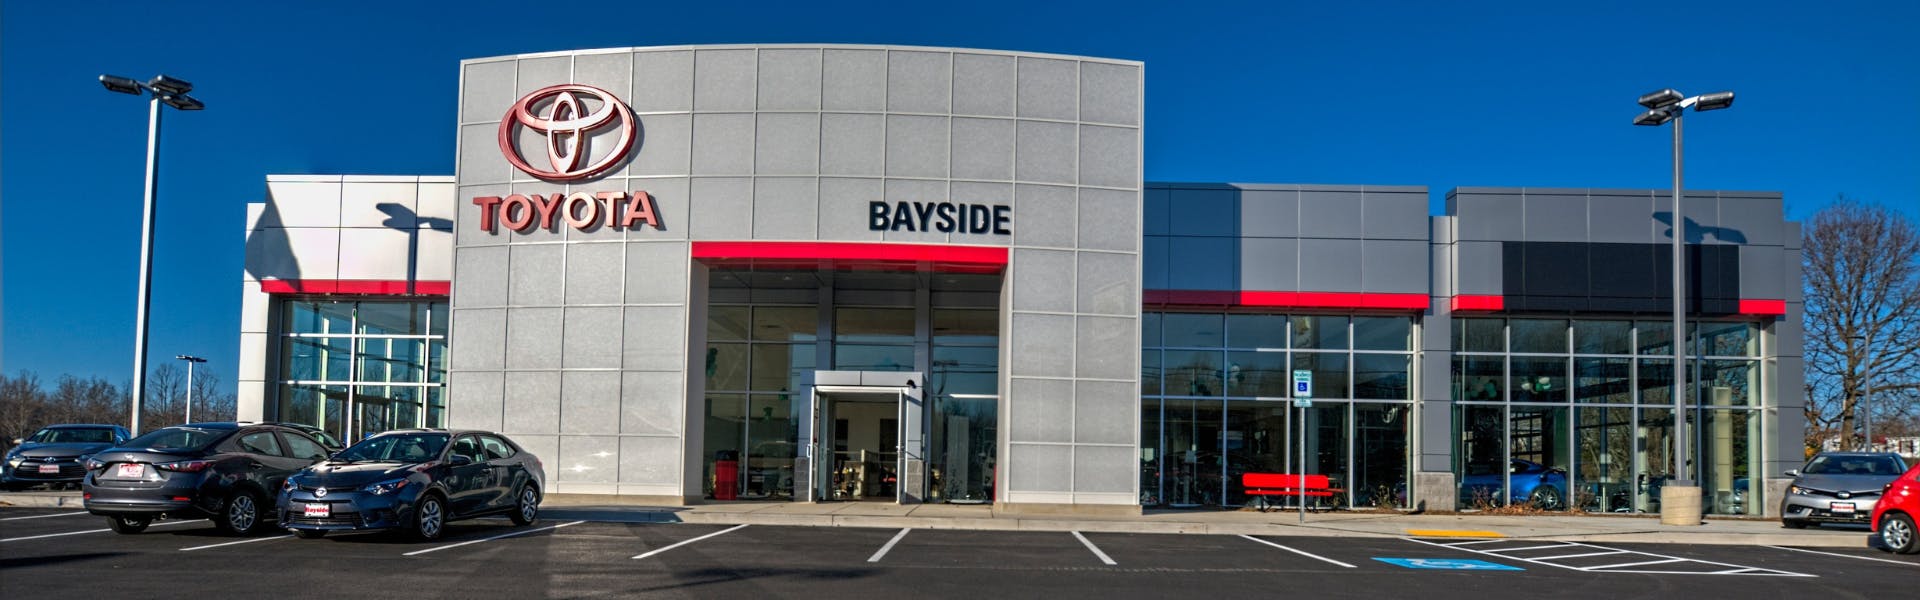 bayside dealership exterior banner